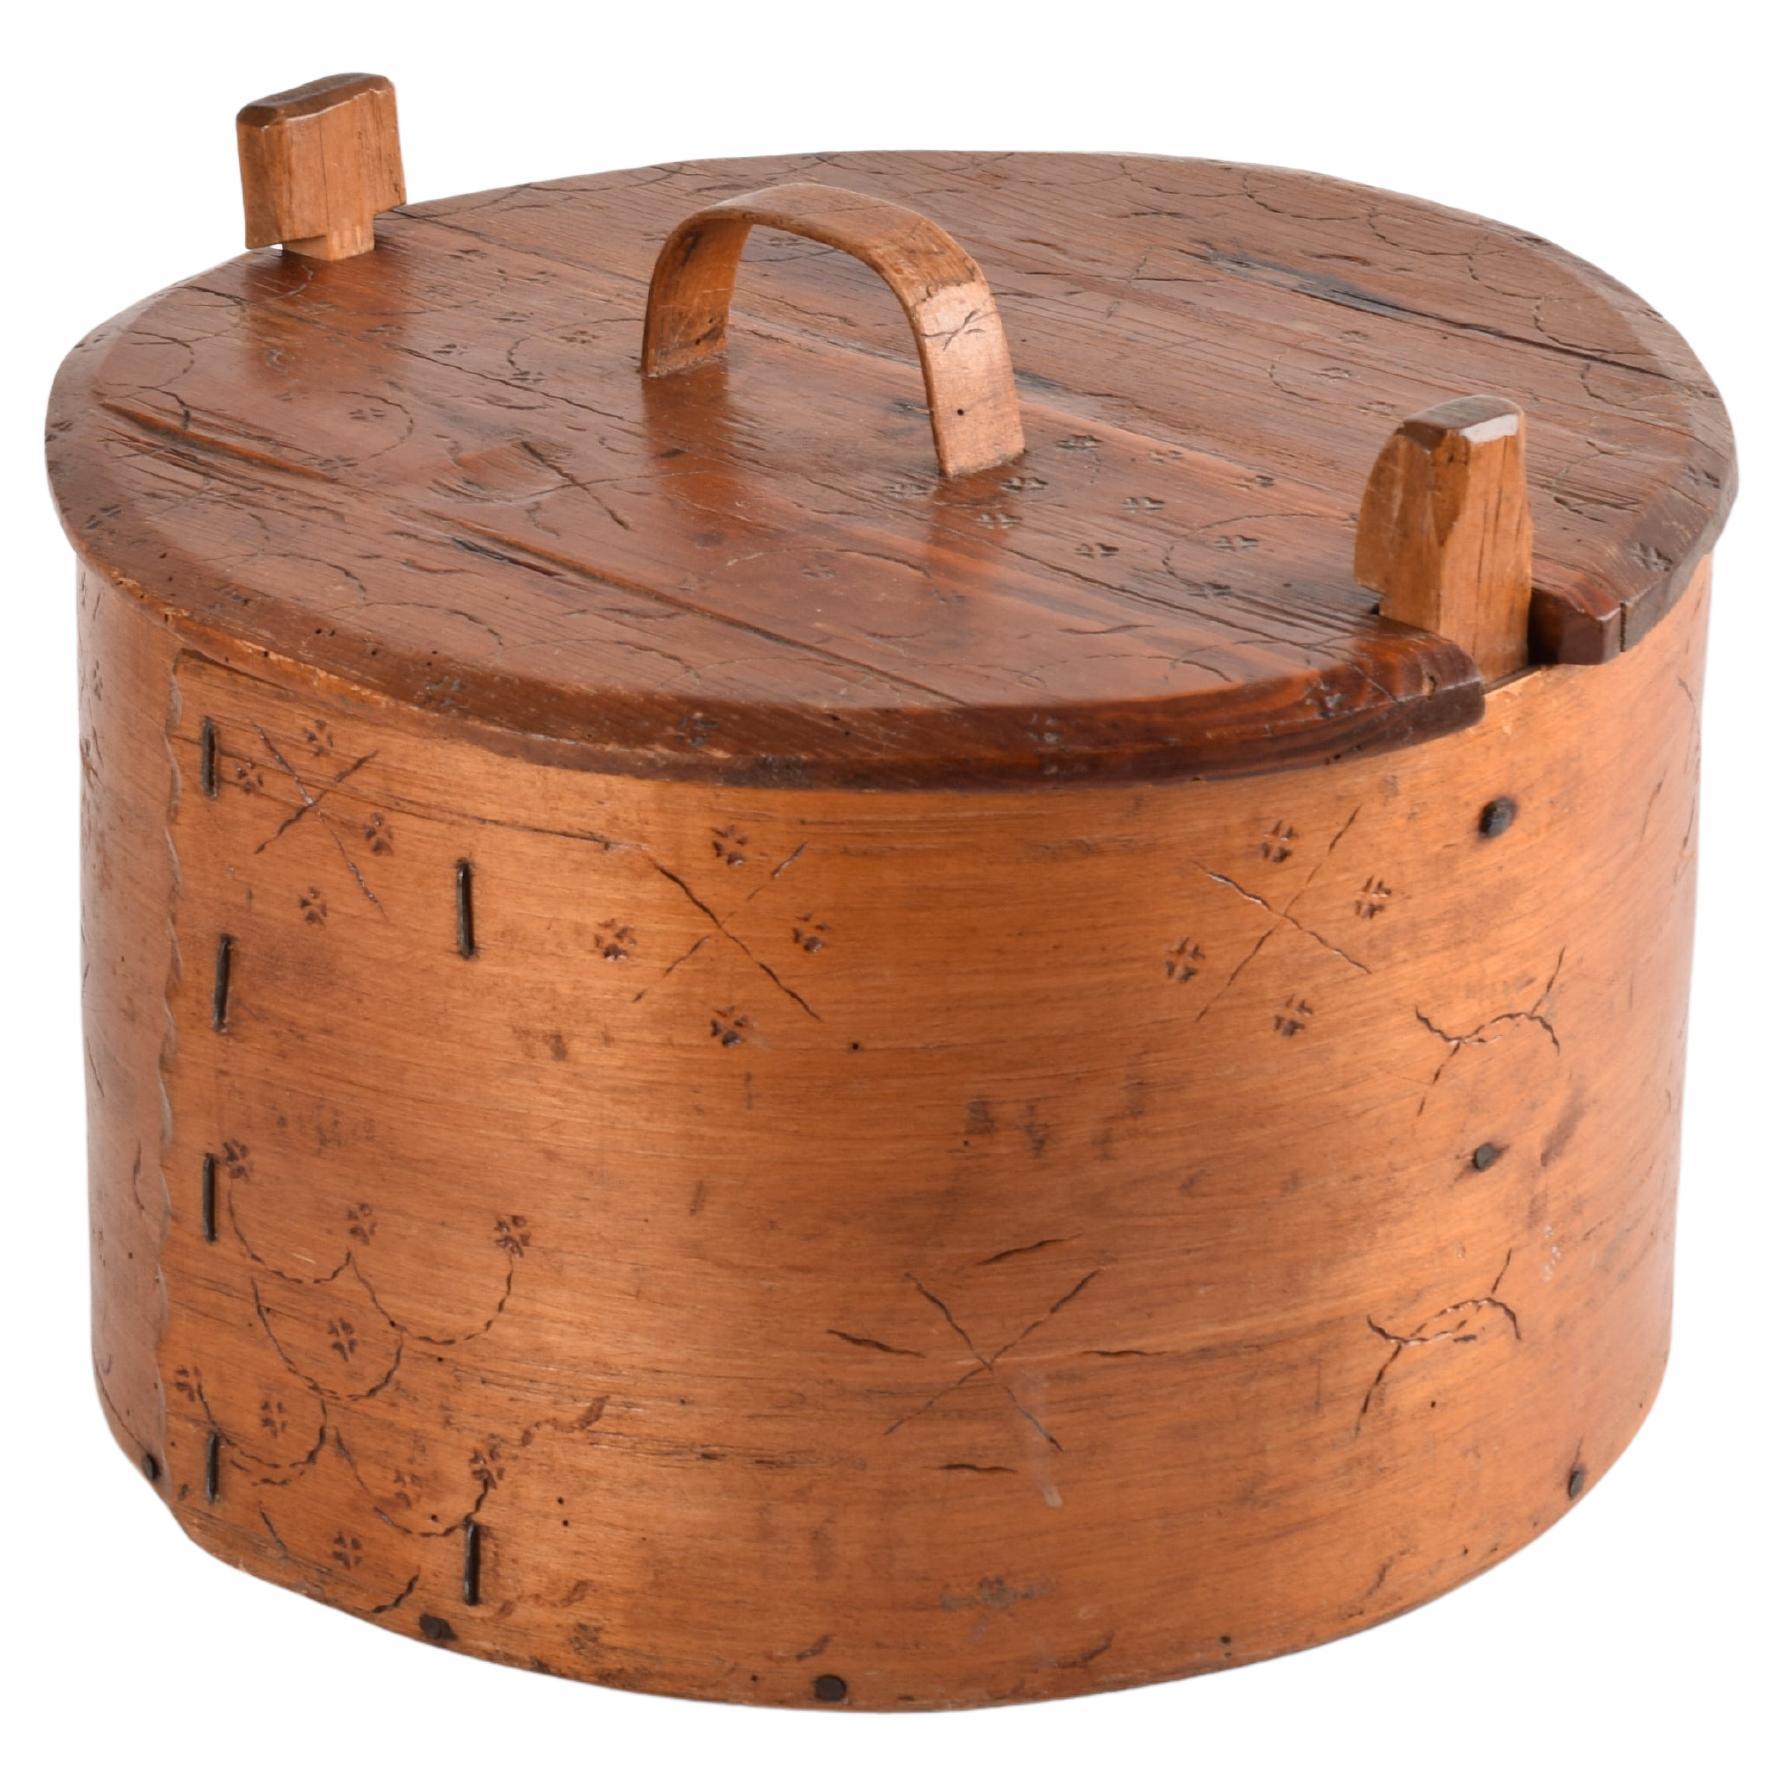 Antique Wooden Half Round Storage Chest Box Original Old Hand Crafted Carved